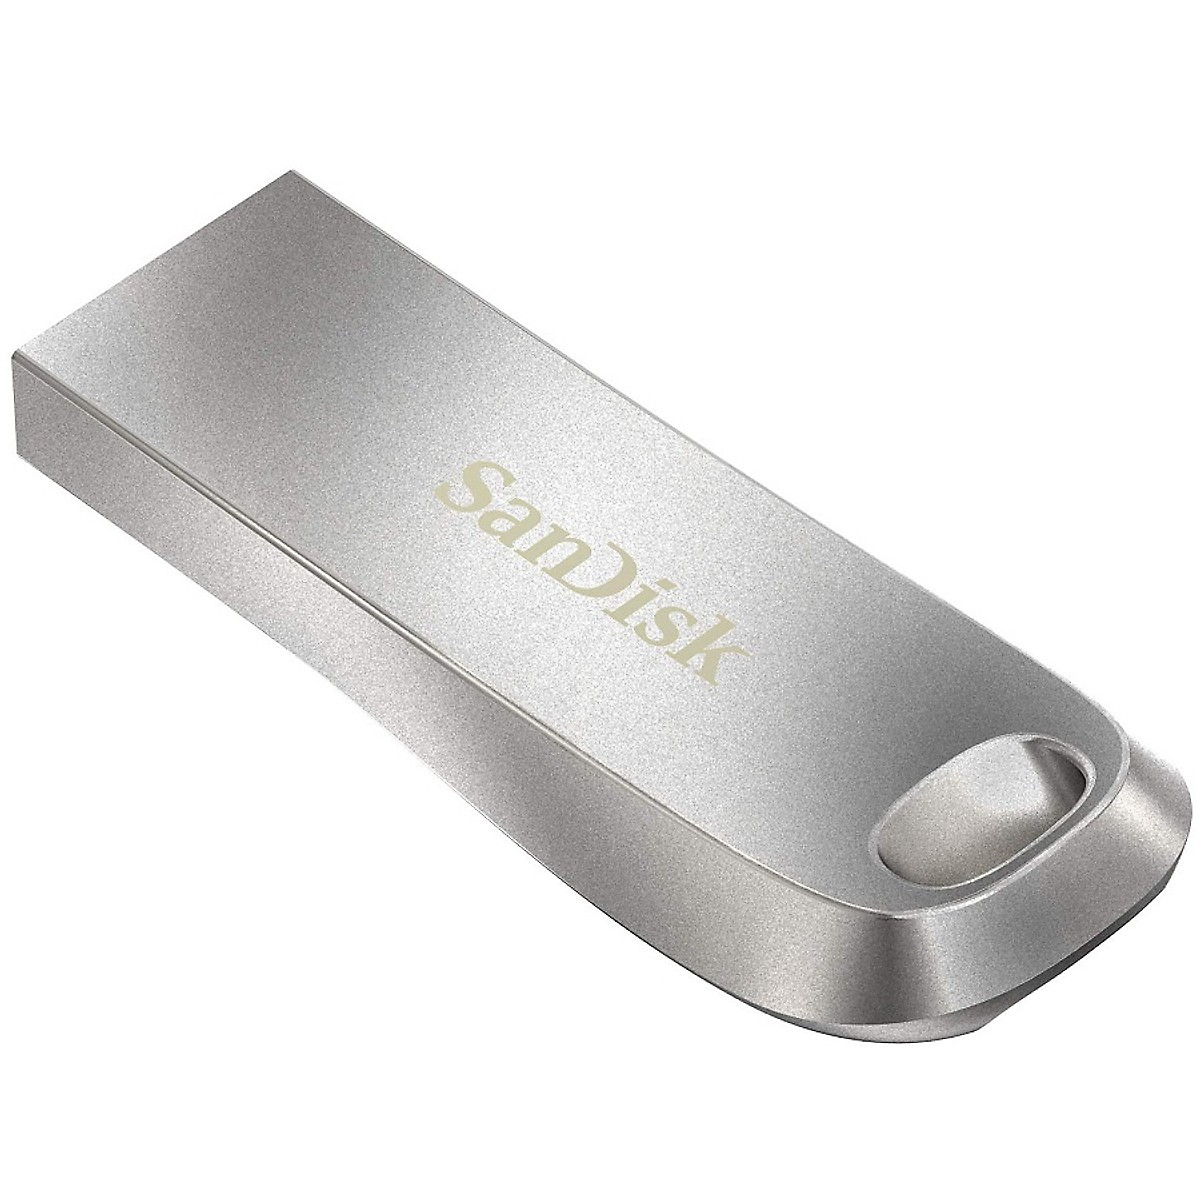 USB SanDisk Ultra Luxe USB 3.1 Flash Drive | SDCZ74-032G-G46 | USB3.1 | Hàng Chính Hãng